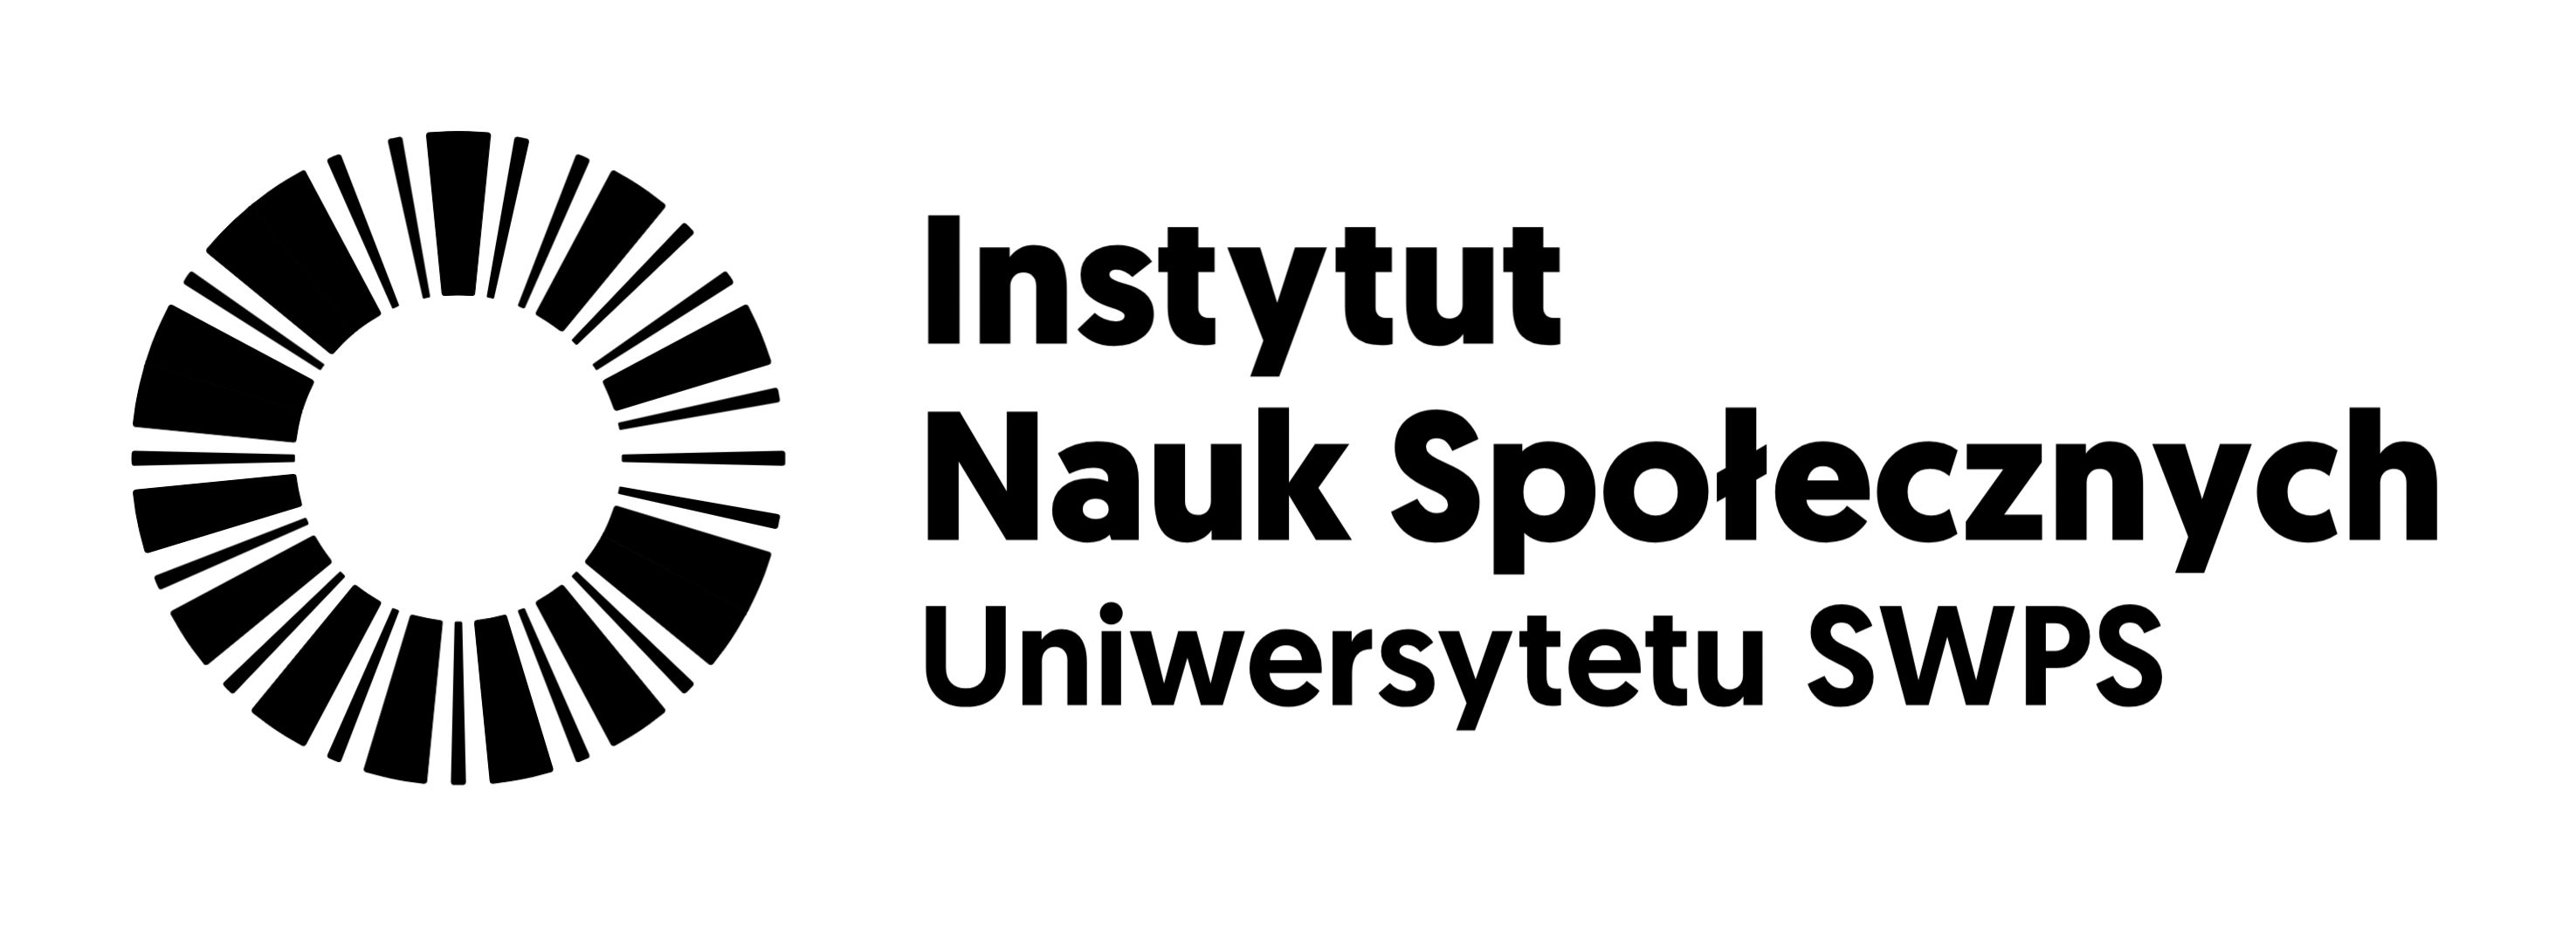 Logo, Instytut Nauk Społecznych Uniwersytetu SWPS